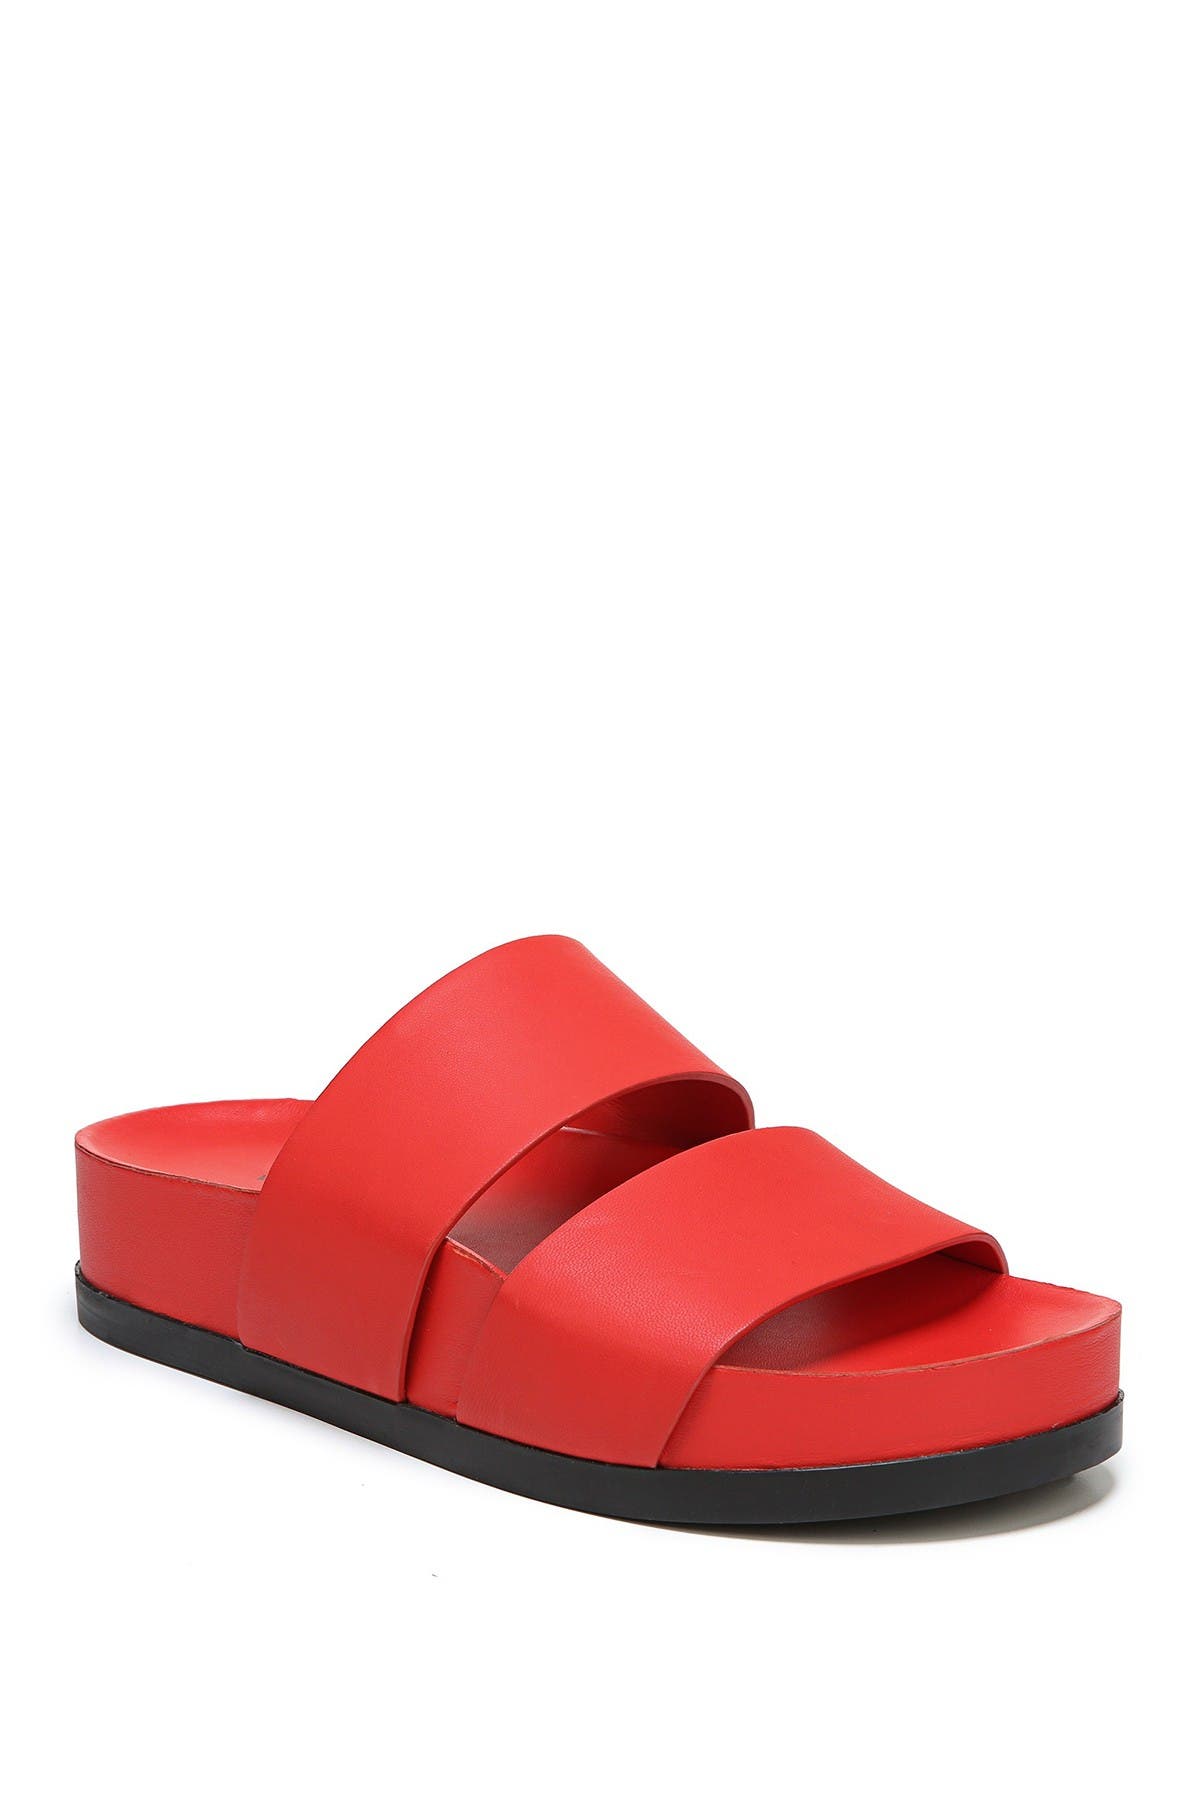 Via Spiga | Milton Leather Slide Sandal 